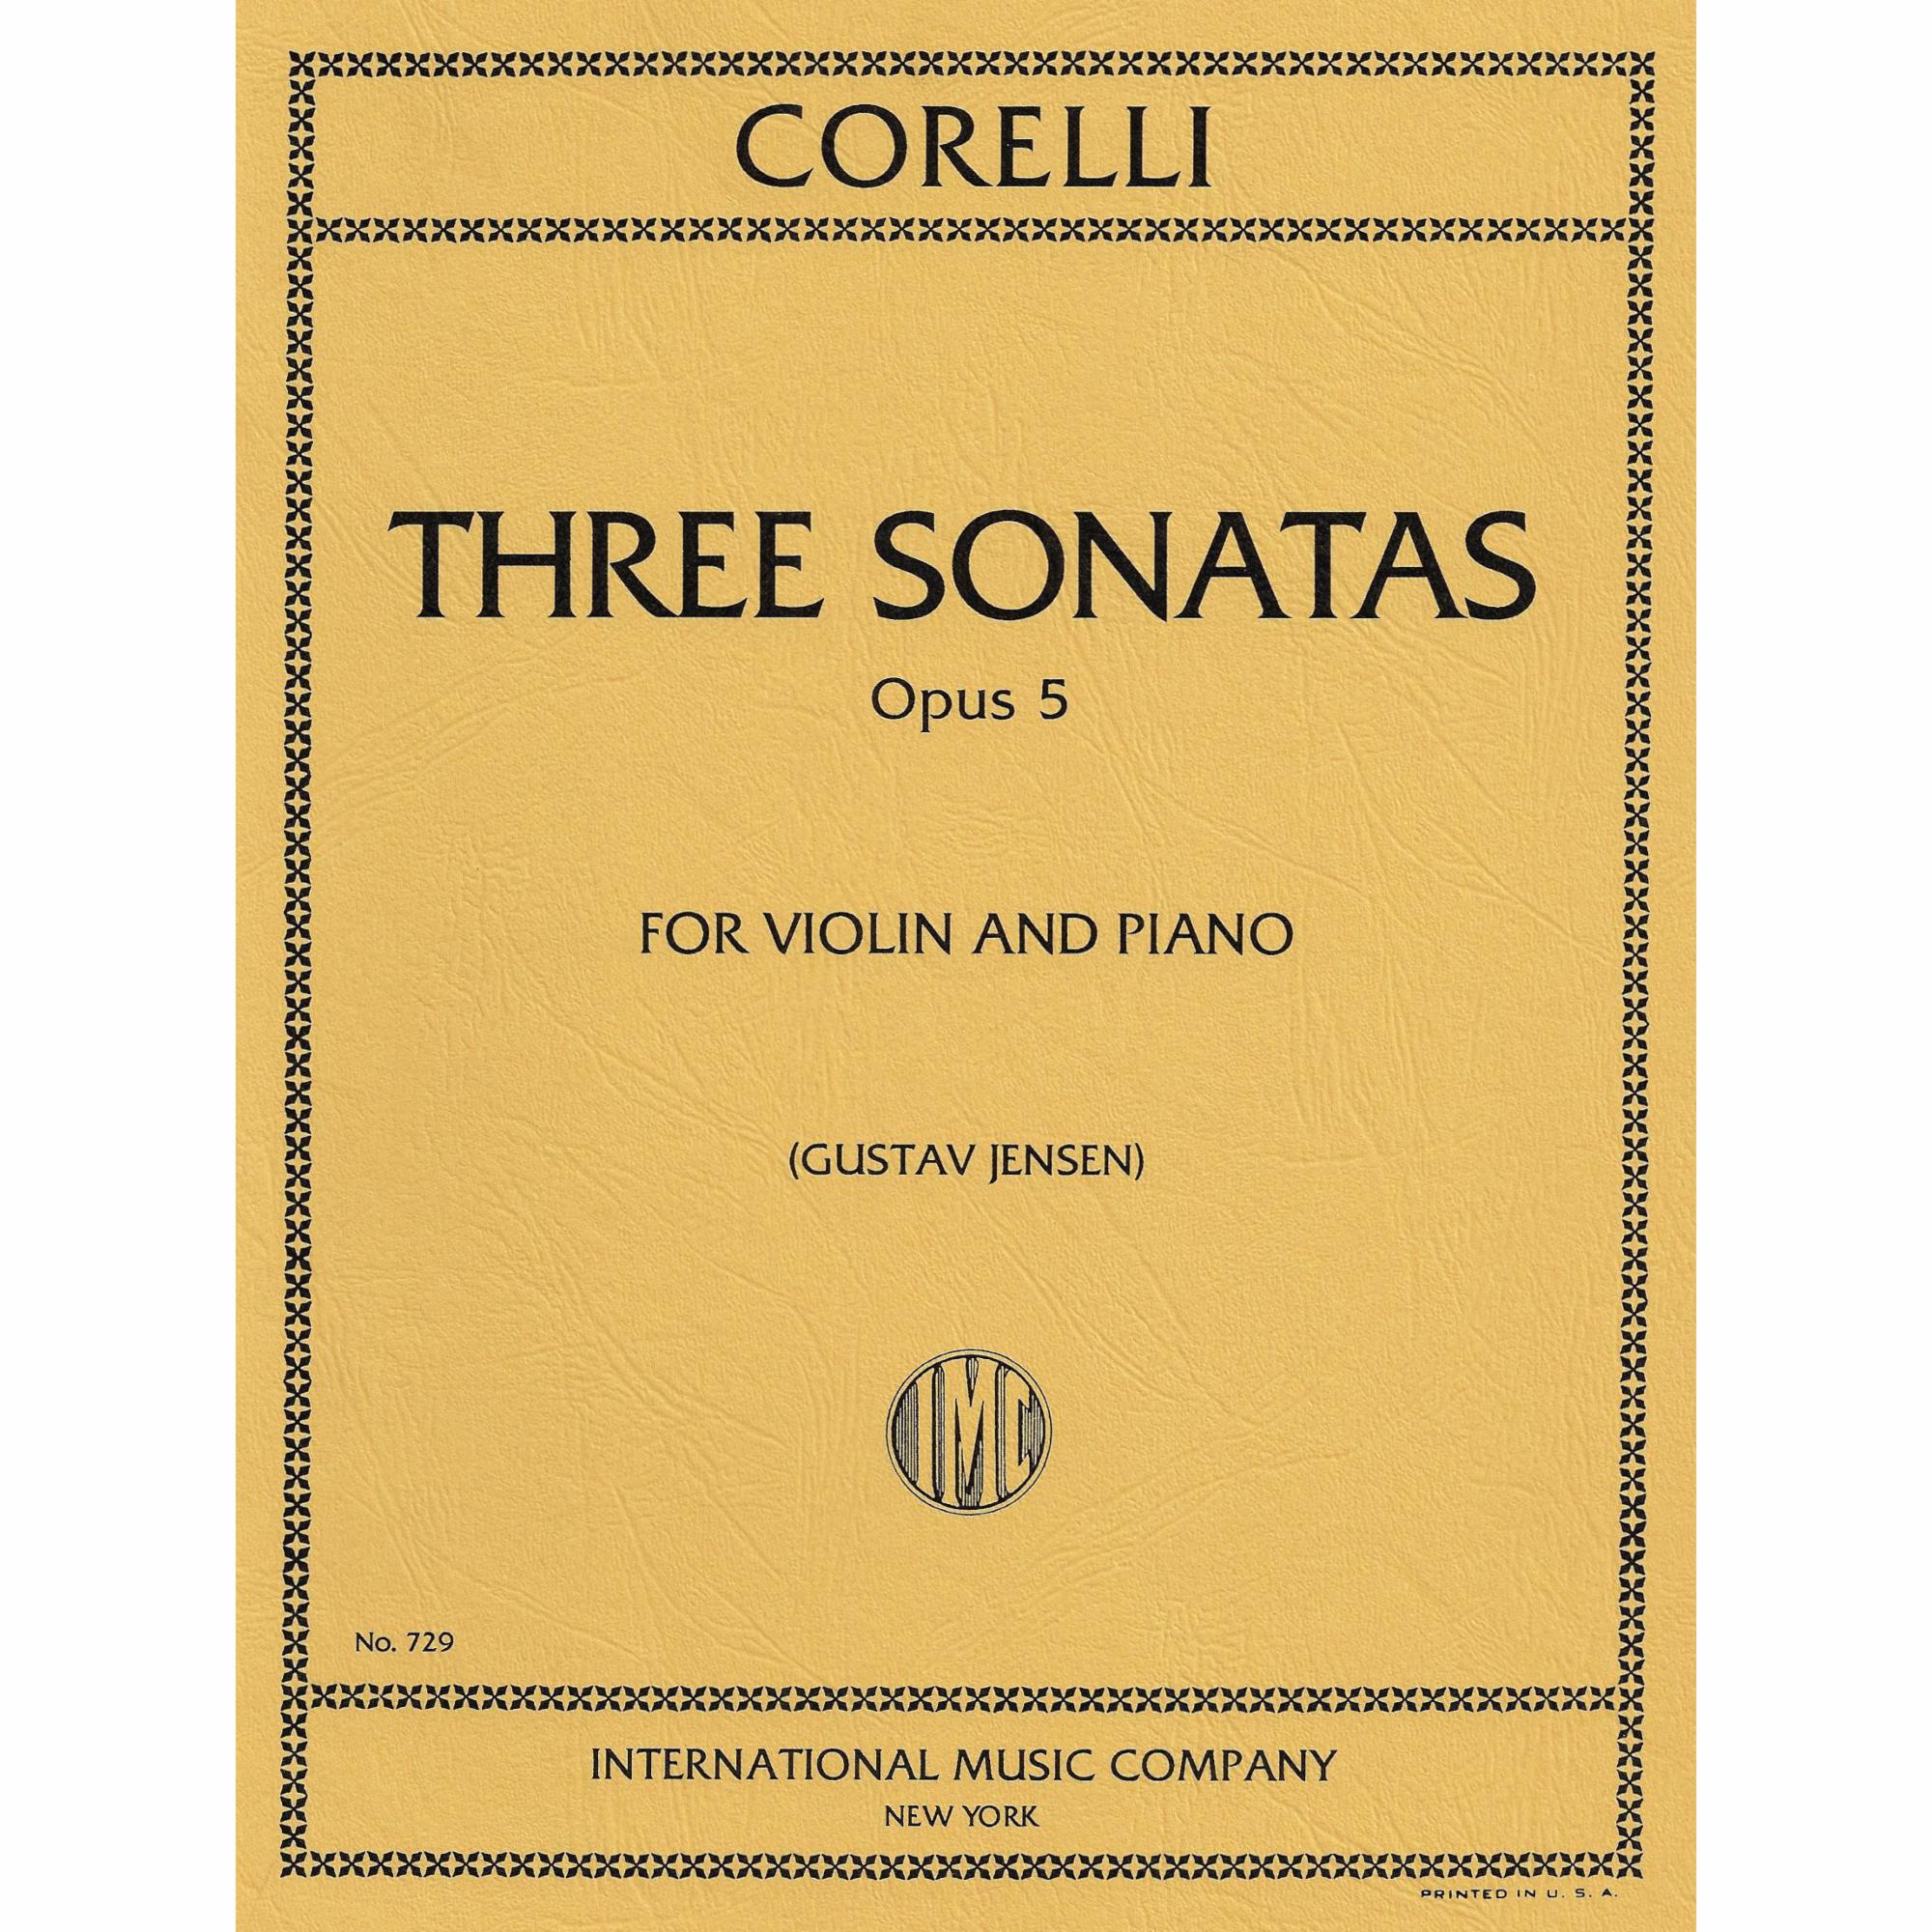 Corelli -- Three Sonatas, Op. 5 for Violin and Piano